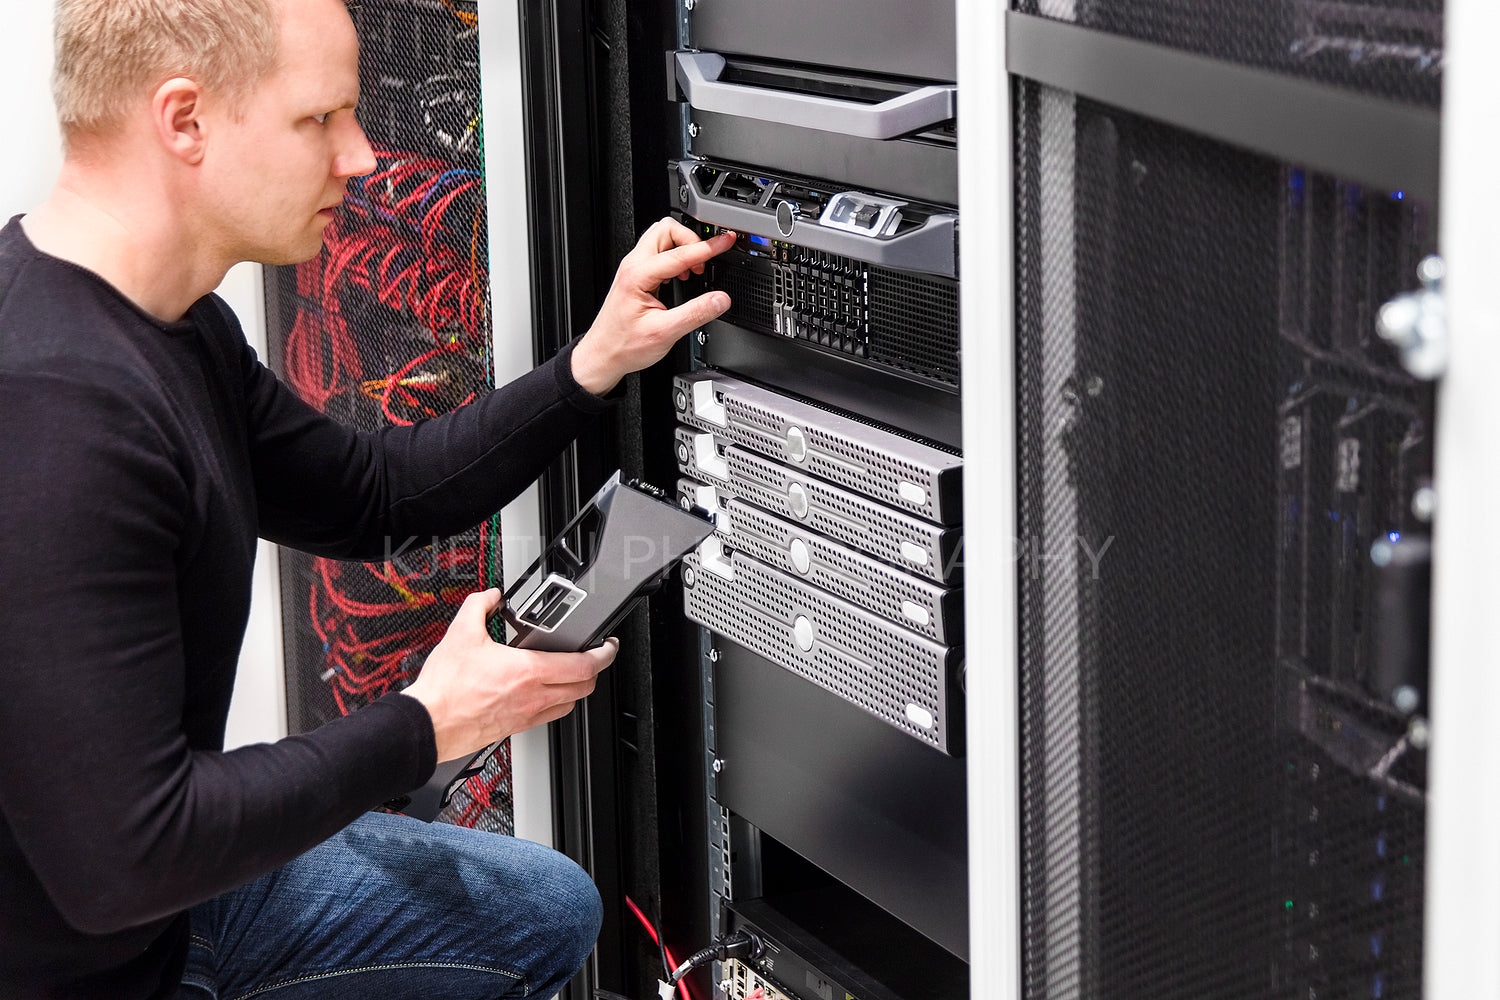 It technician maintain servers an SAN in datacenter